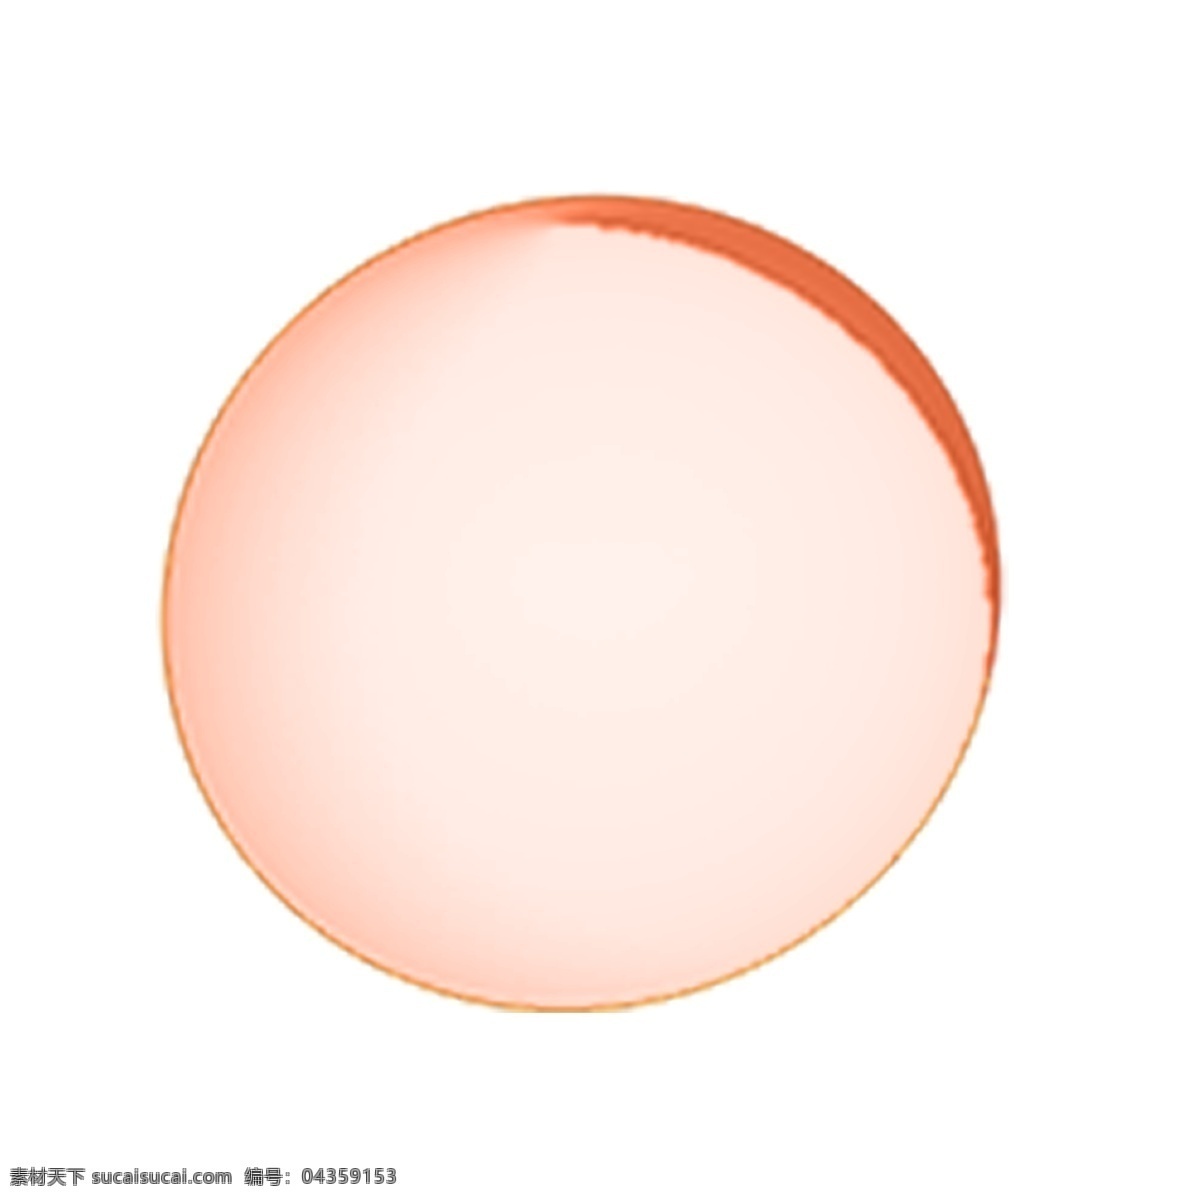 橙 白色 圆球 免 抠 图 气球 圆形球 立体圆球 发光 橙色 暖色色系圆球 立体 球